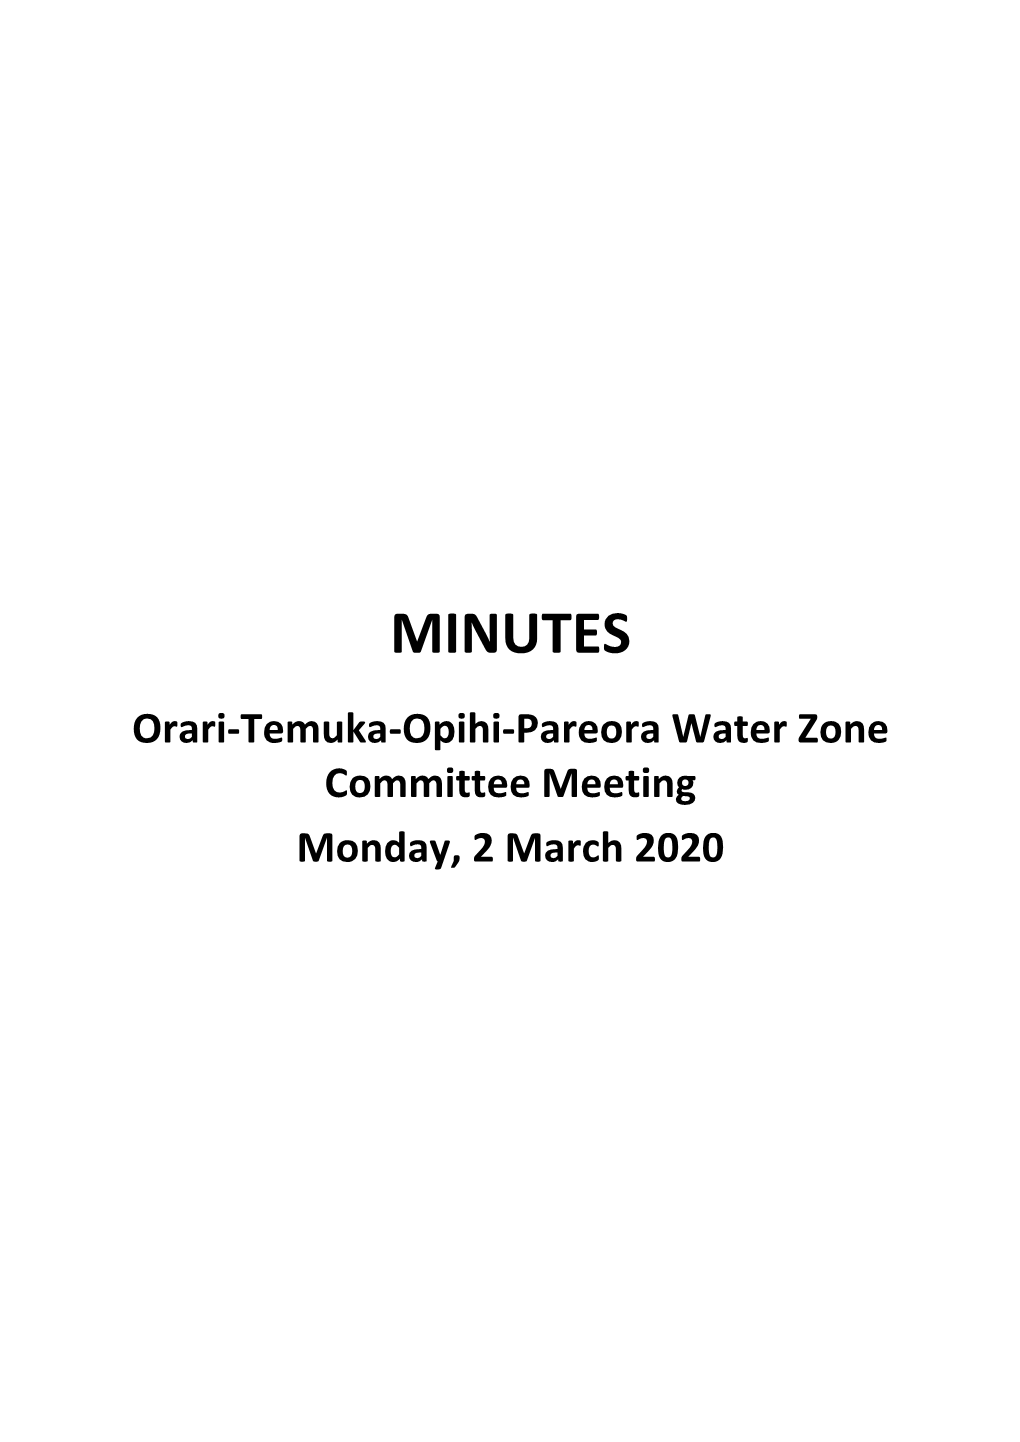 Minutes of Orari-Temuka-Opihi-Pareora Water